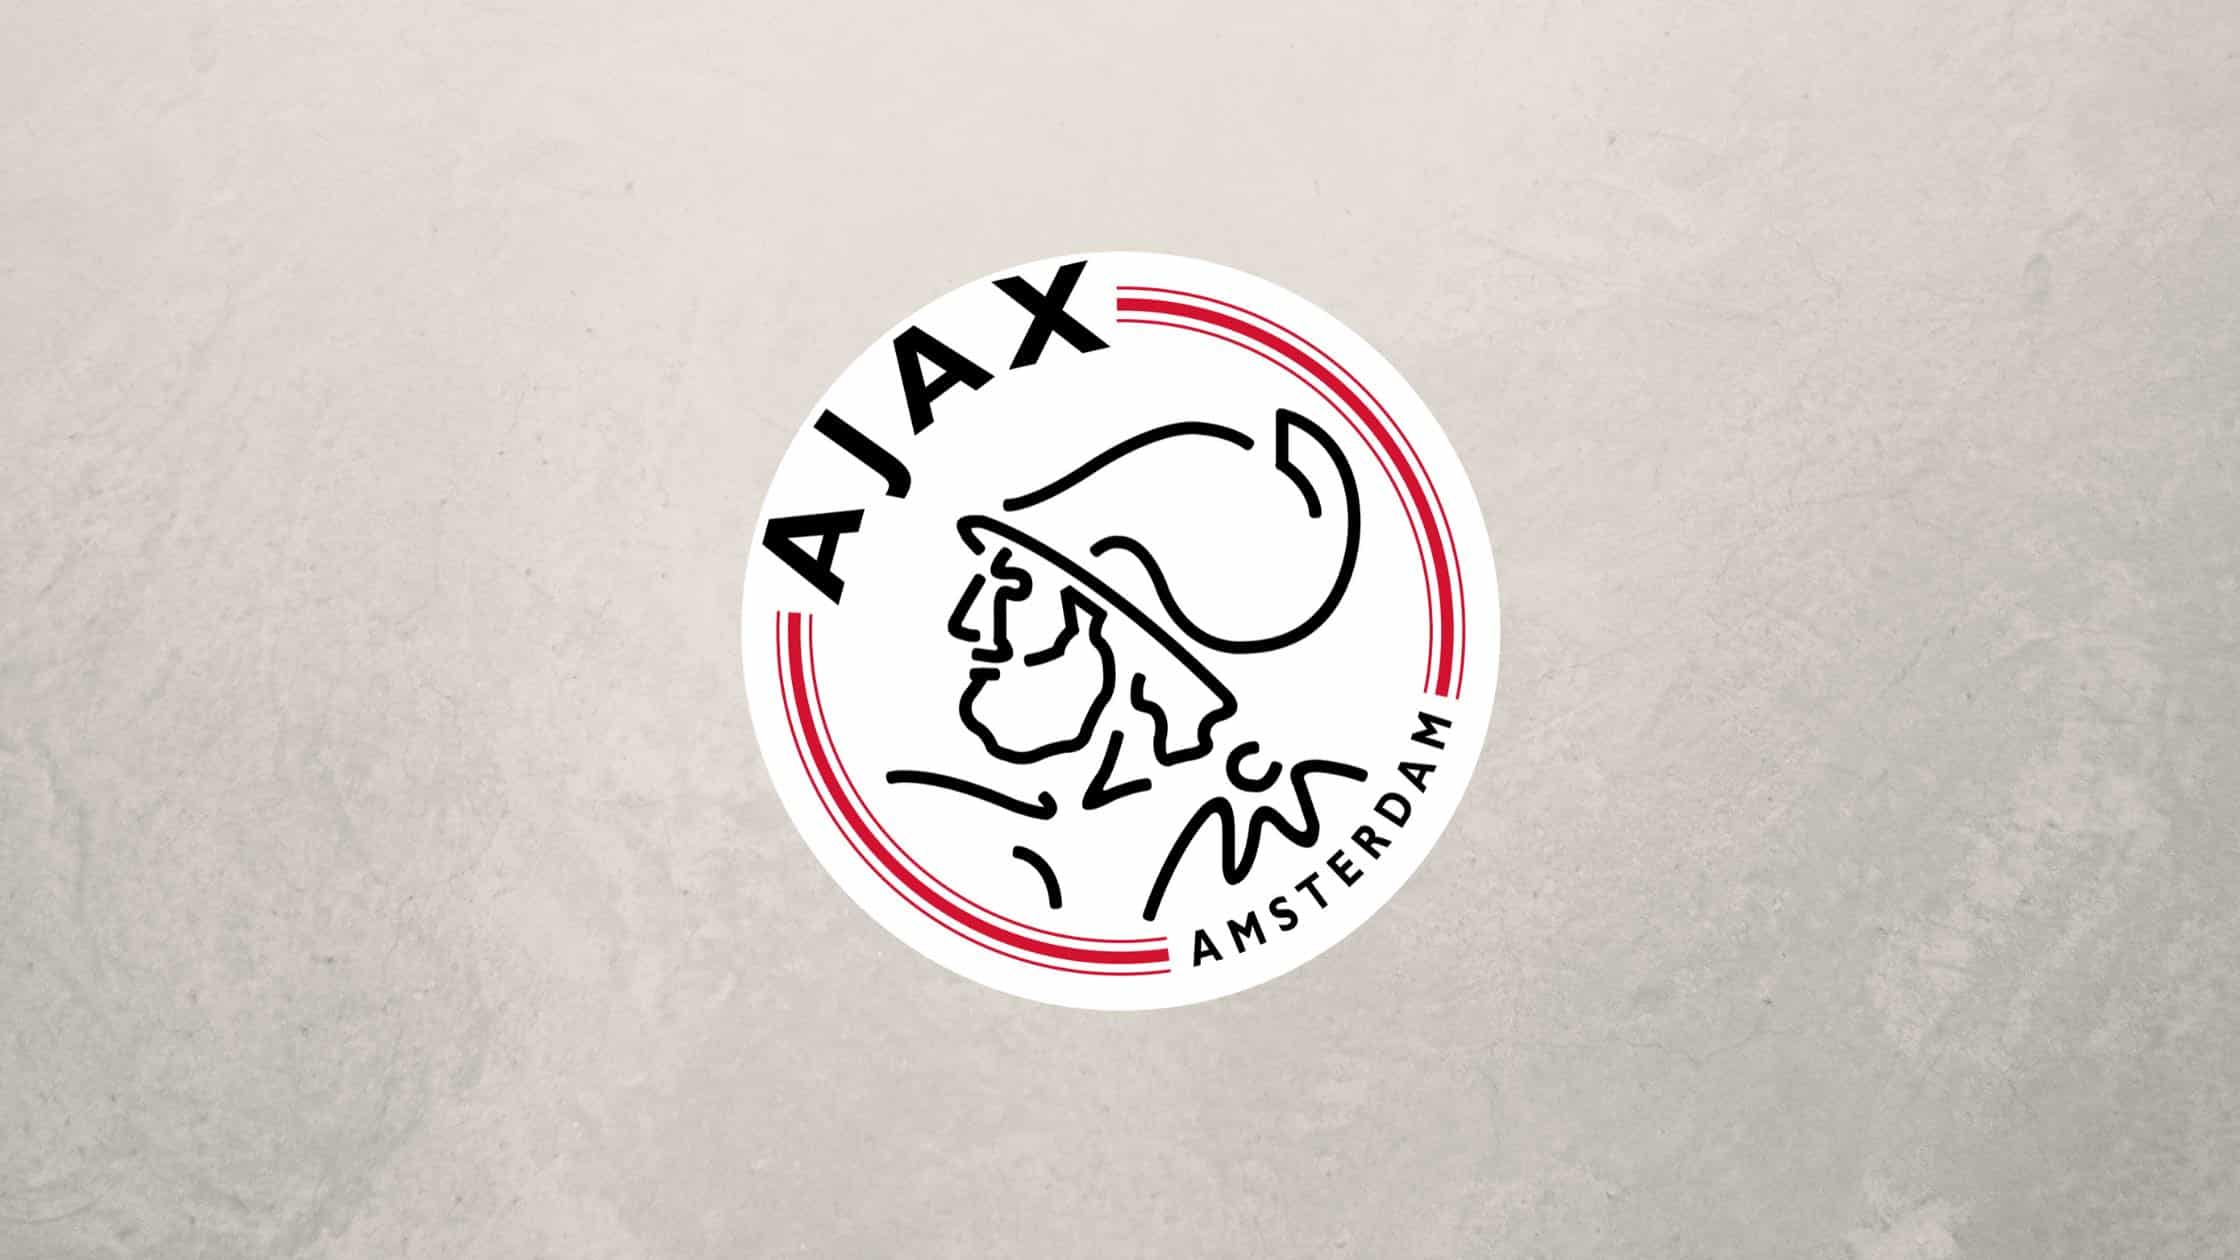 Ajax Amsterdam ist ein Dauergast in der Champions League.